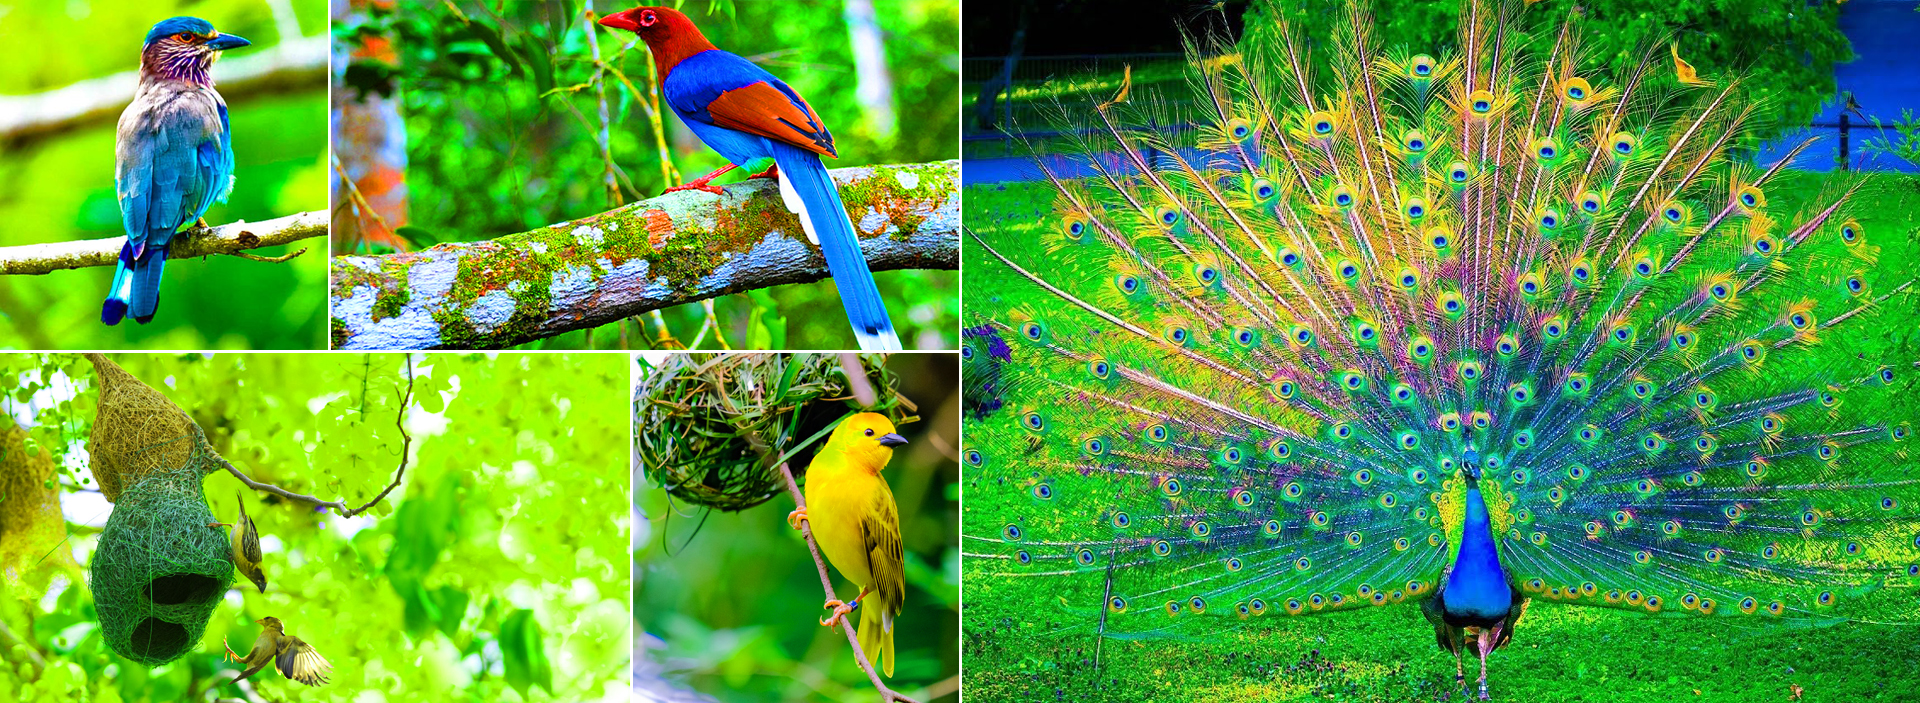 Bird Watching Tours in Sri Lanka